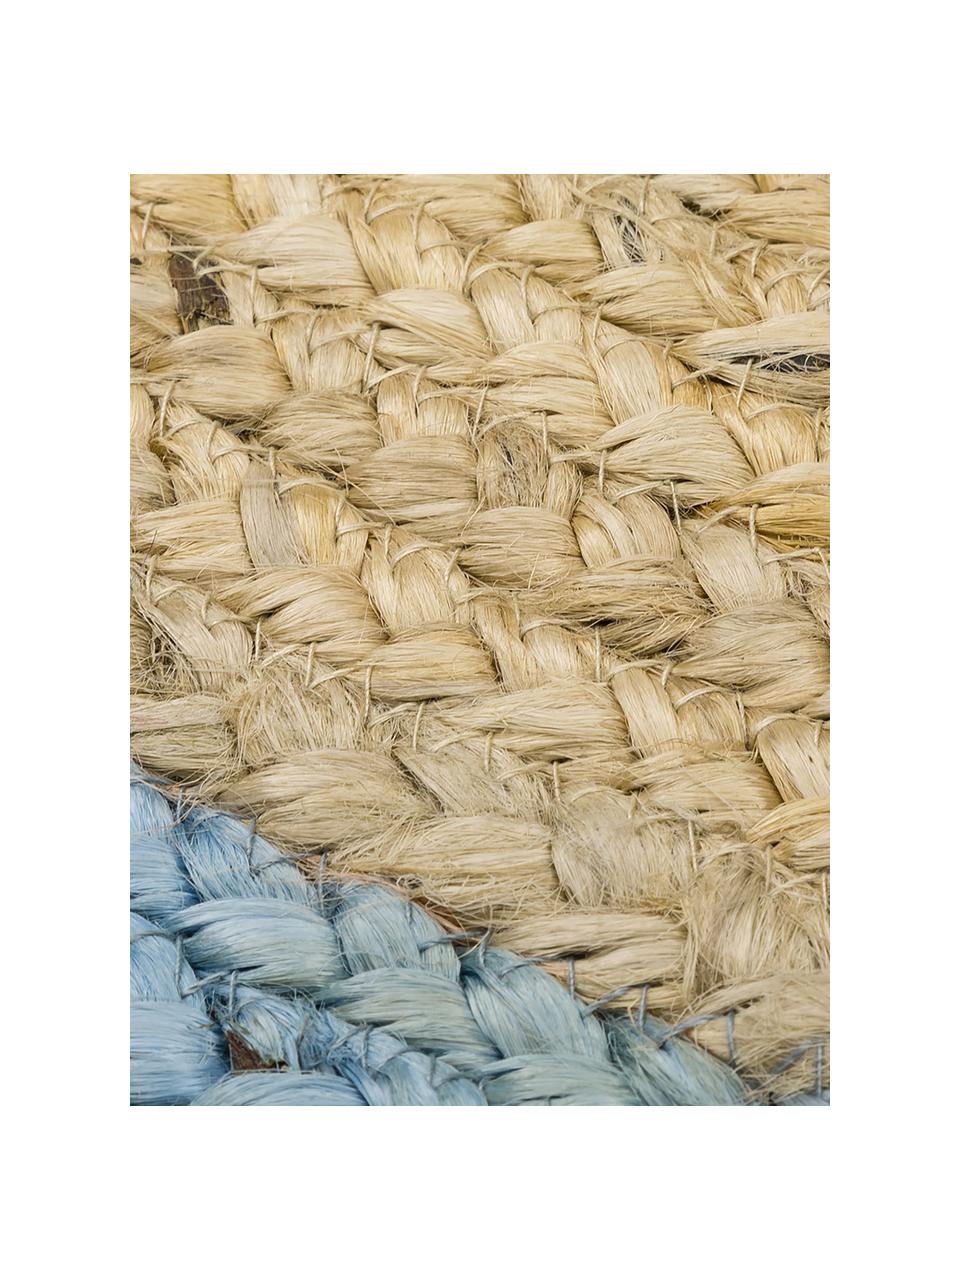 Runder Jute-Teppich Shanta mit blauem Rand, handgefertigt, 100% Jute

Da die Haptik von Jute-Teppichen rau ist, sind sie für den direkten Hautkontakt weniger geeignet., Braun, Taubenblau, Ø 100 cm (Größe XS)